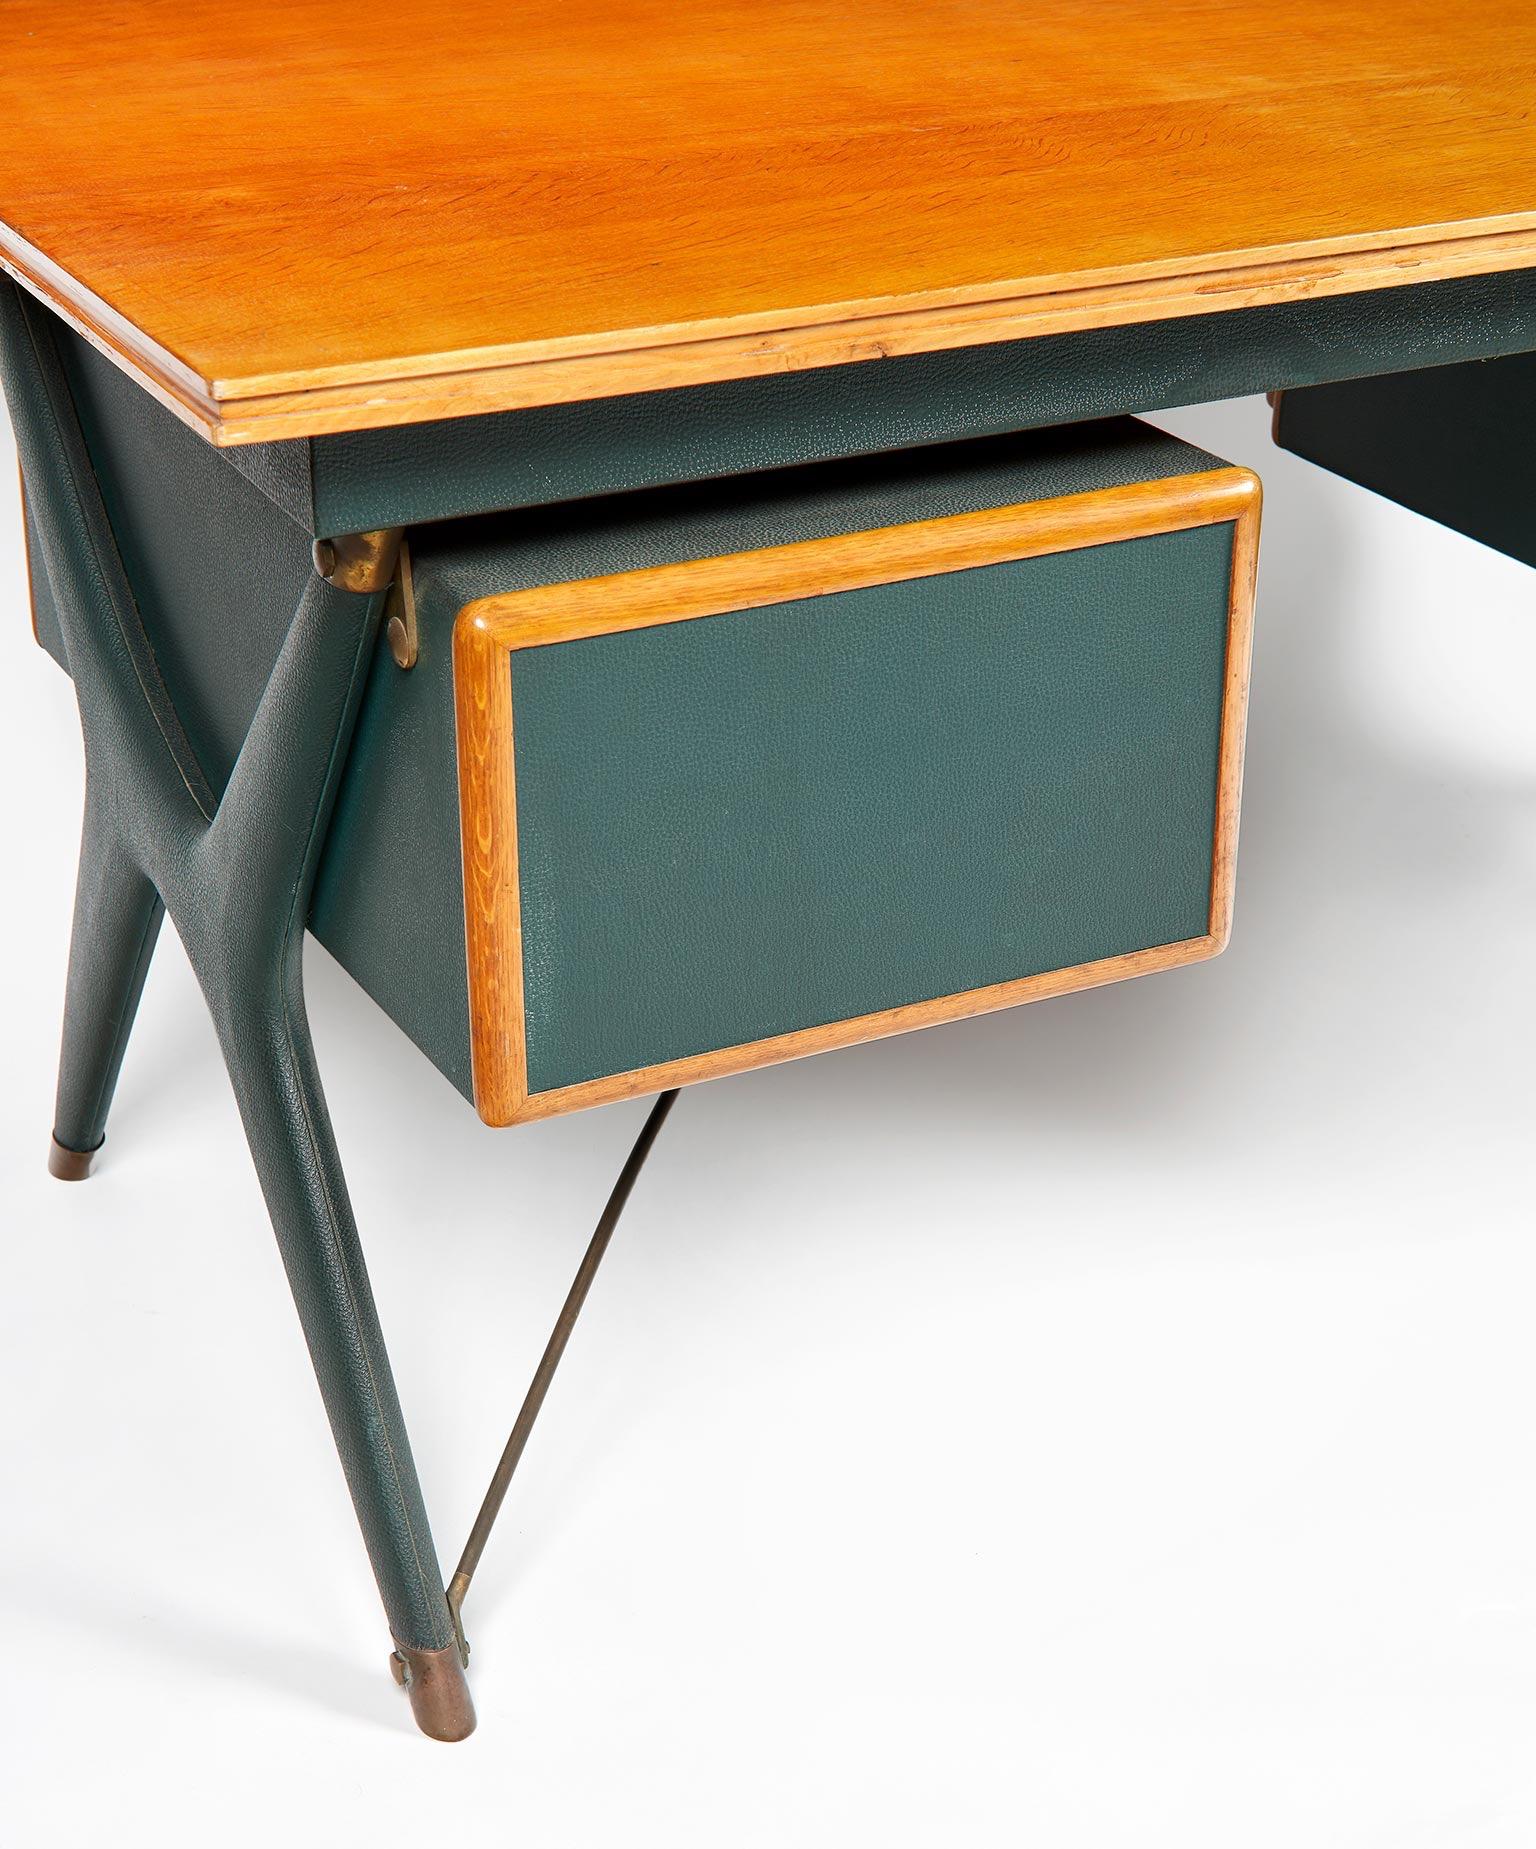 Silvio Berrone, Desk from the Bialetti Building, 1955–1956 11